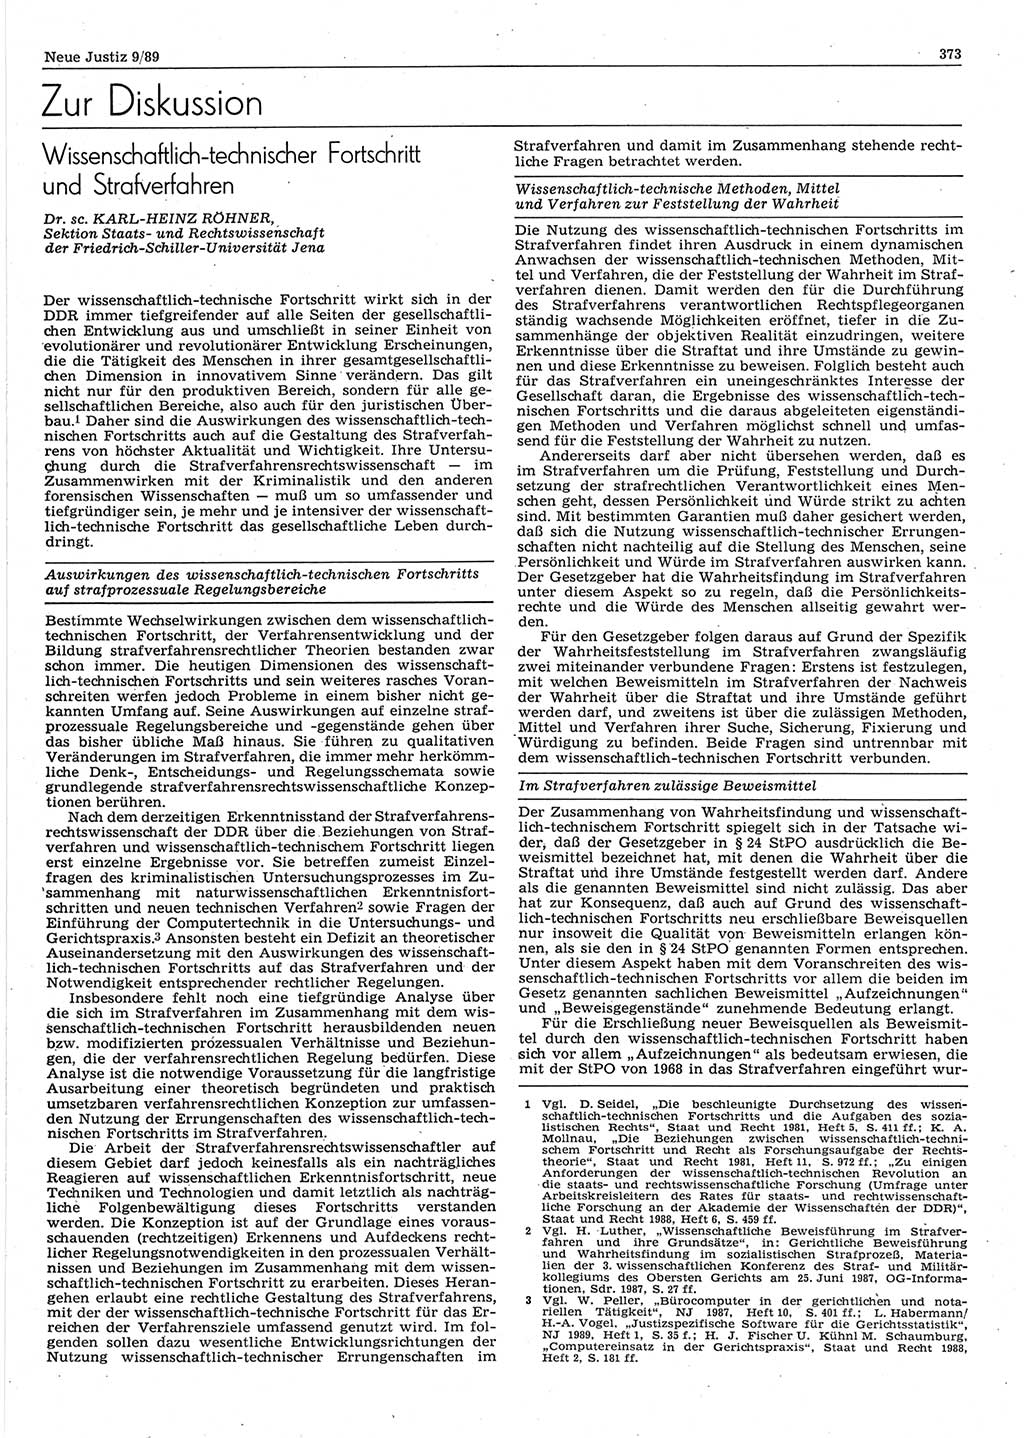 Neue Justiz (NJ), Zeitschrift für sozialistisches Recht und Gesetzlichkeit [Deutsche Demokratische Republik (DDR)], 43. Jahrgang 1989, Seite 373 (NJ DDR 1989, S. 373)